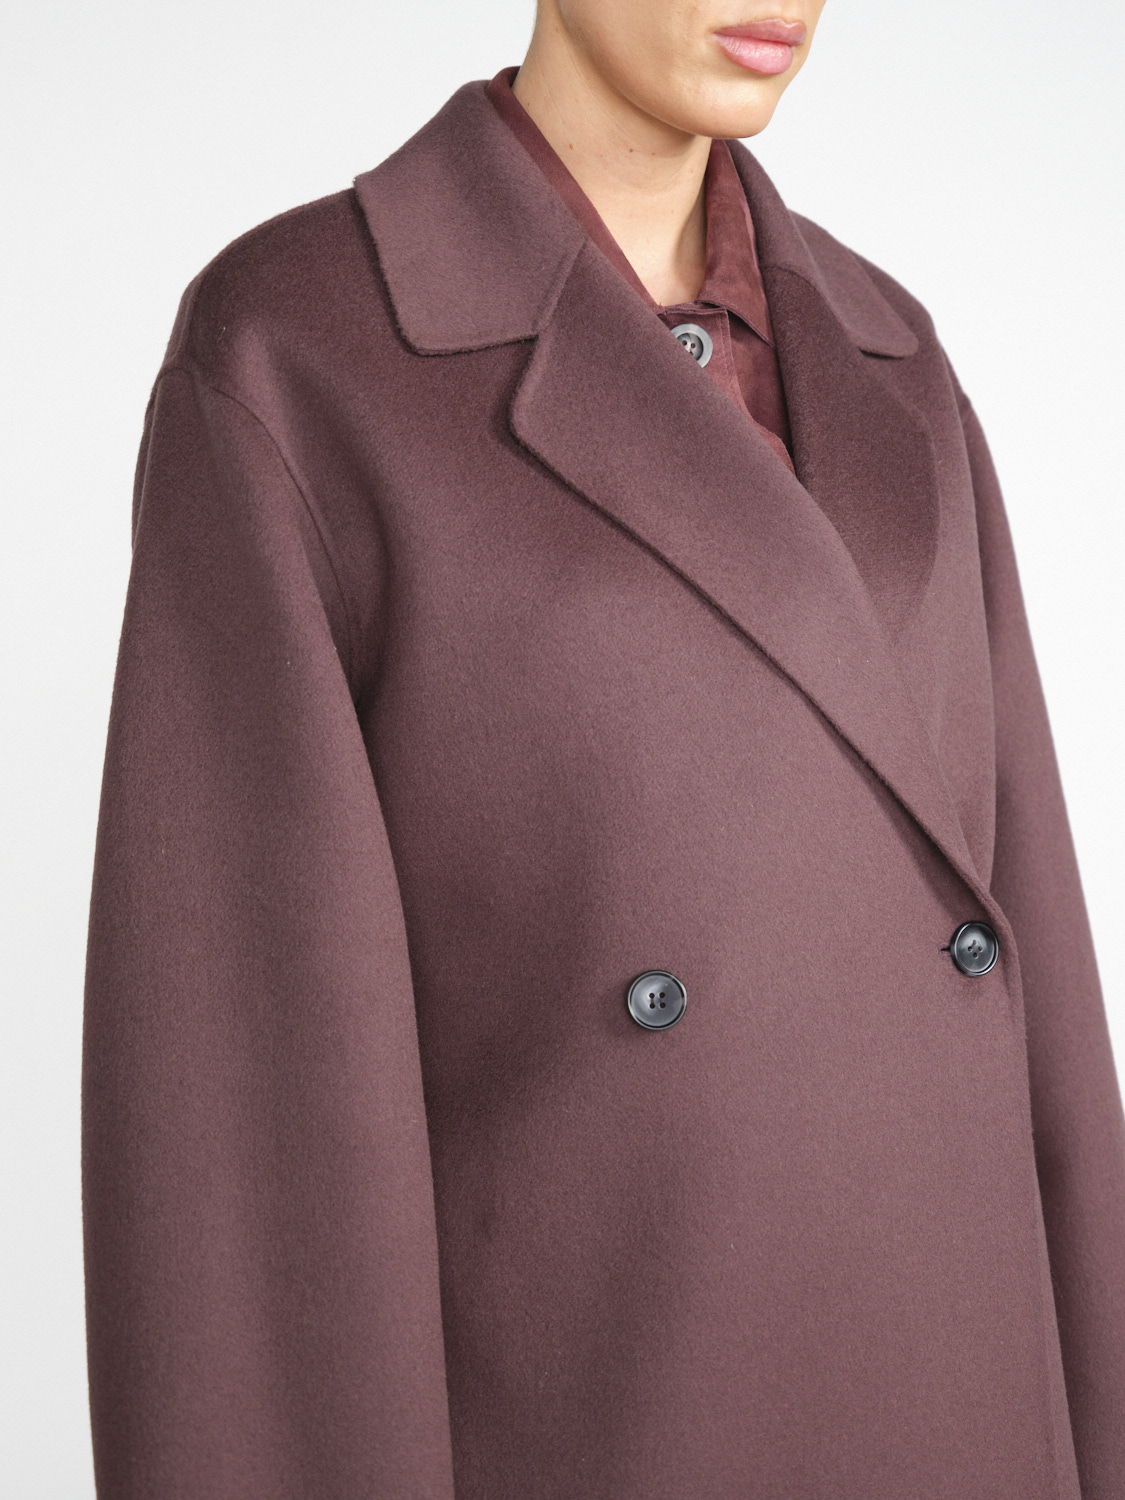 Arma Short wool coat with tie detail  brown 34